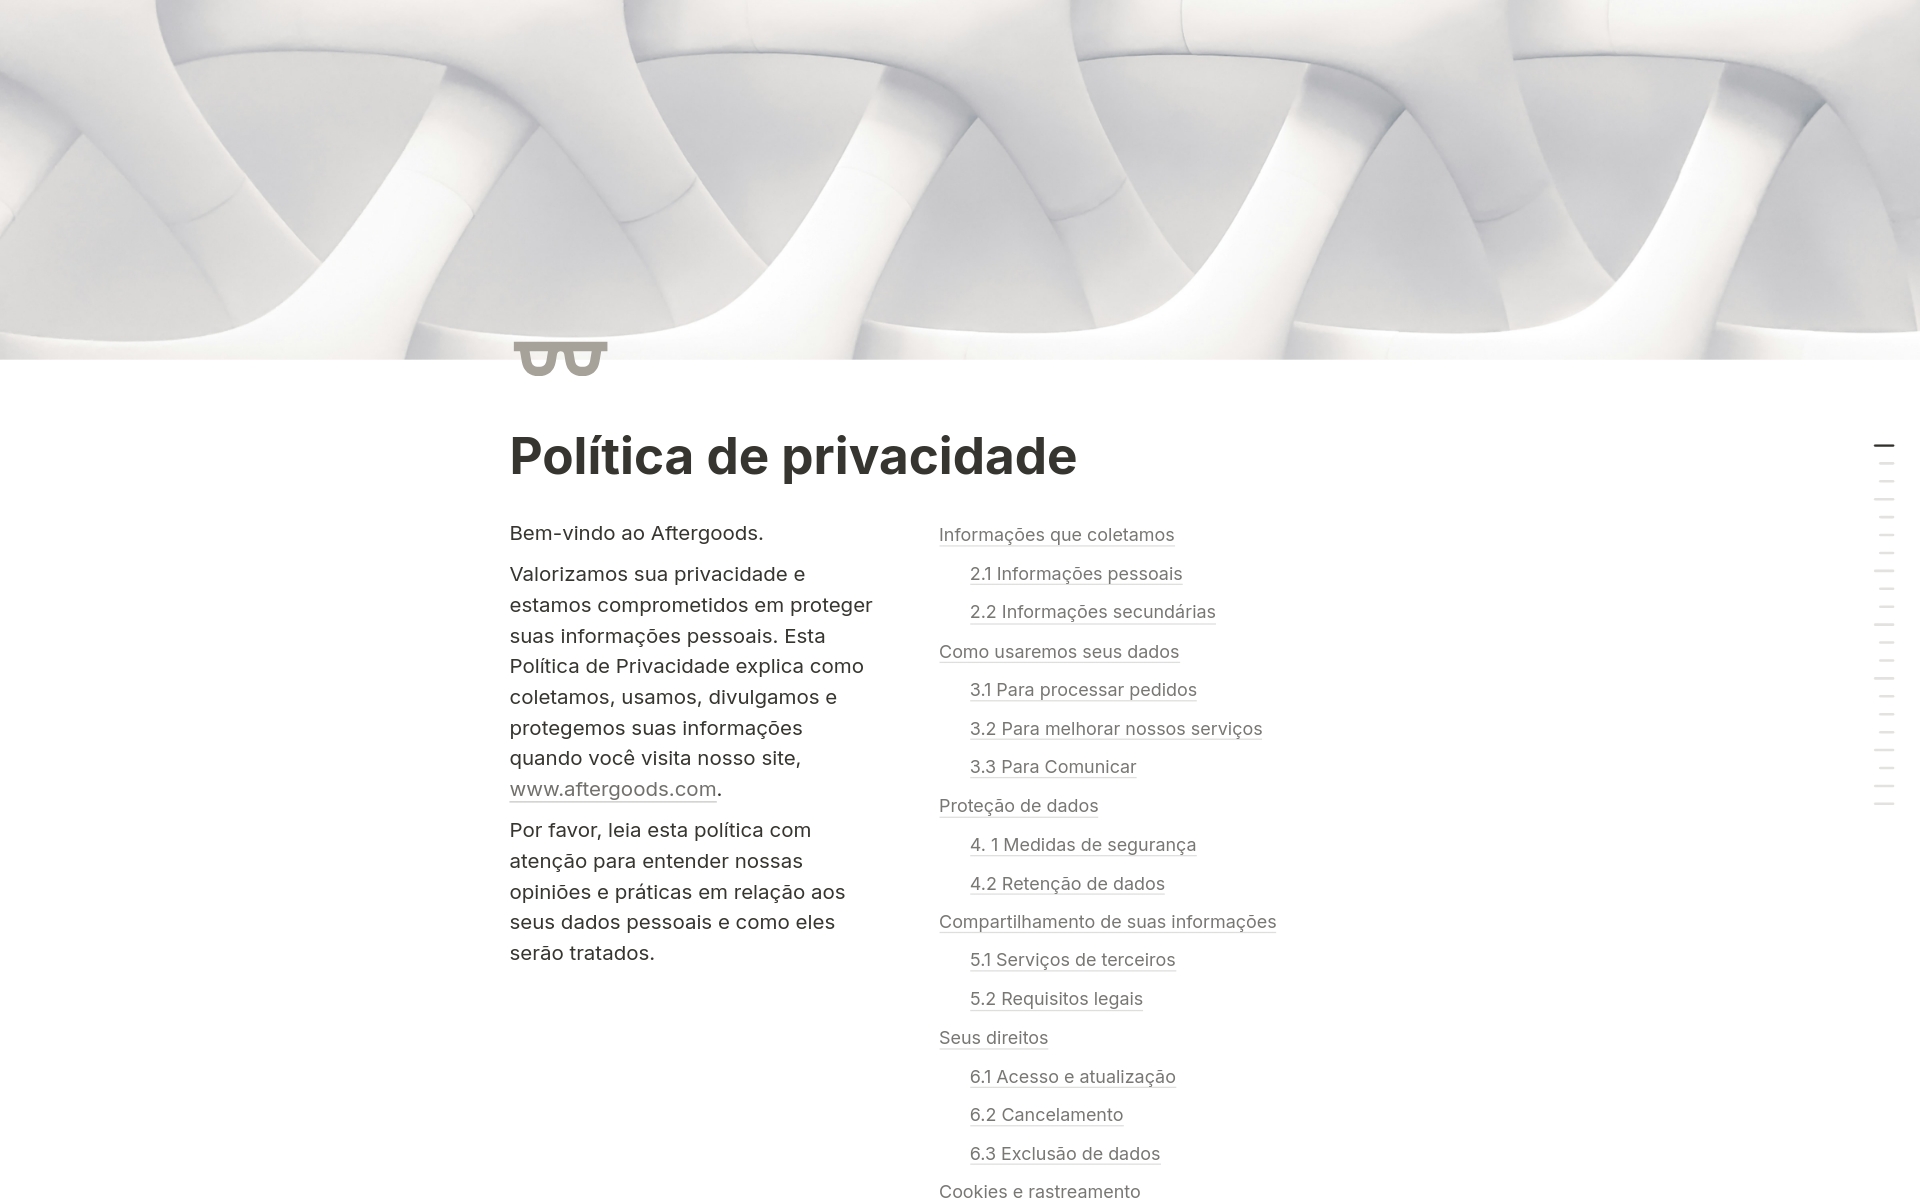 Um modelo abrangente de política de privacidade para informar os usuários sobre as práticas de coleta e proteção de dados.